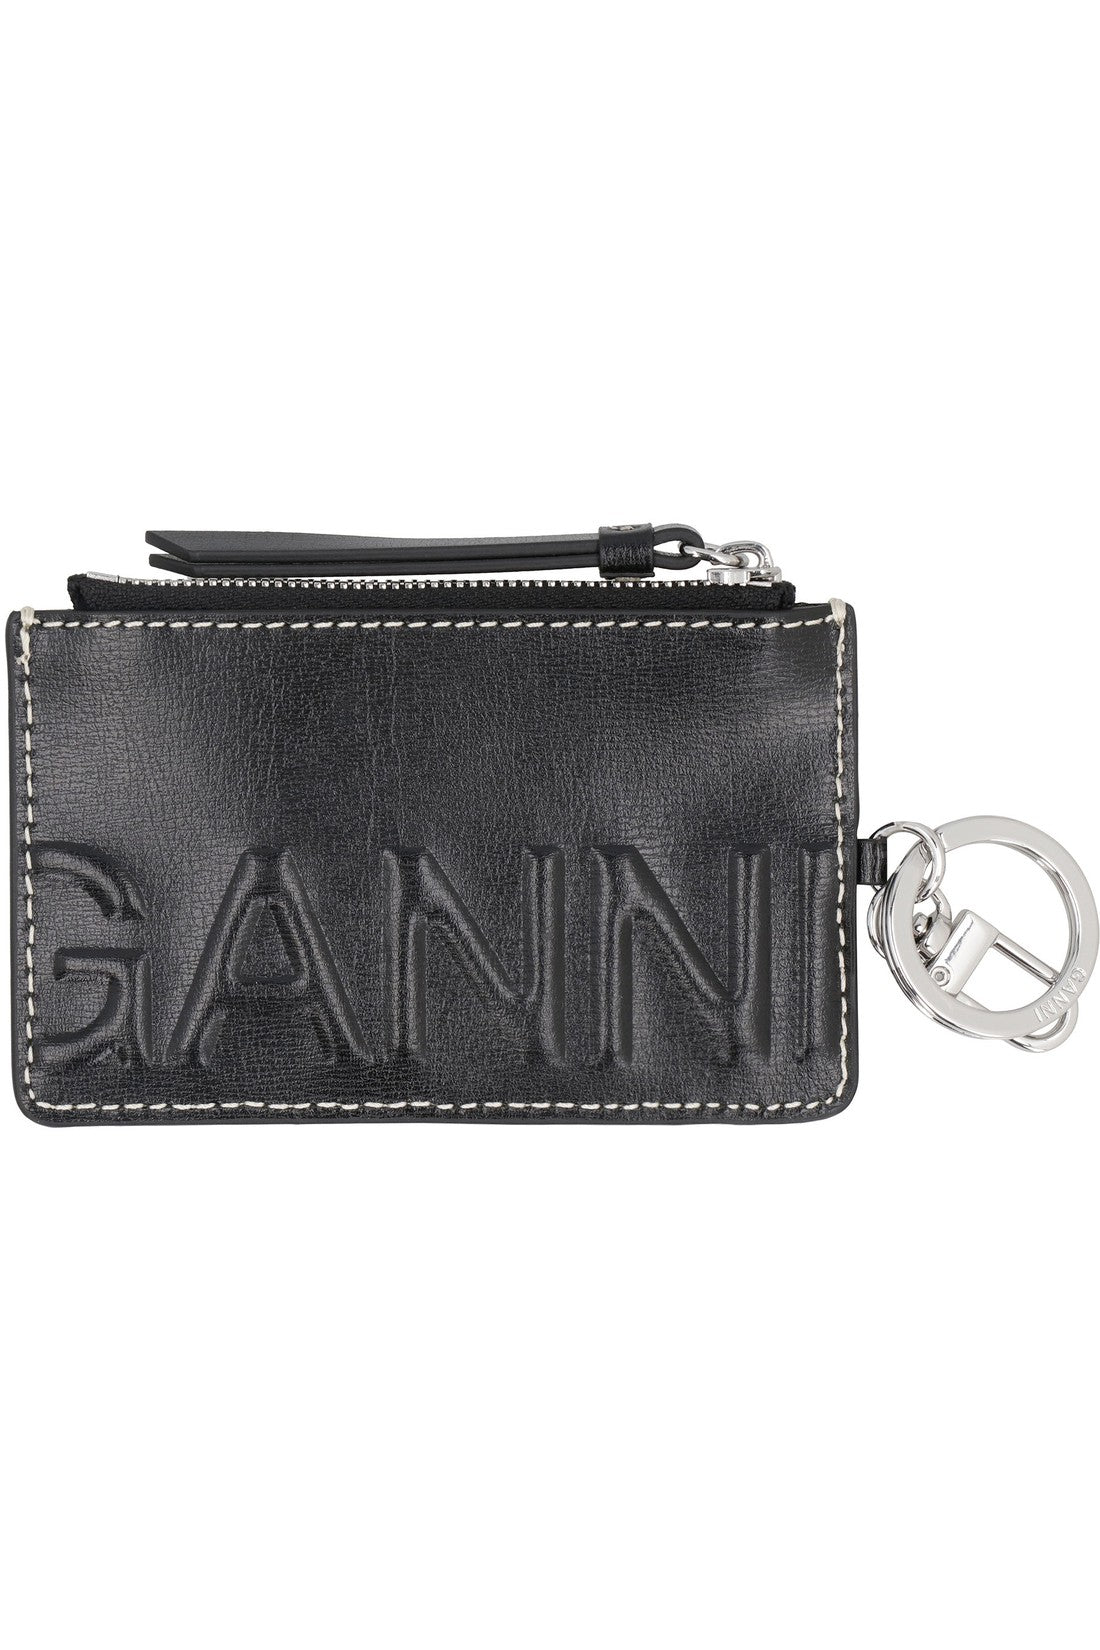 GANNI-OUTLET-SALE-Vegan leather card holder-ARCHIVIST